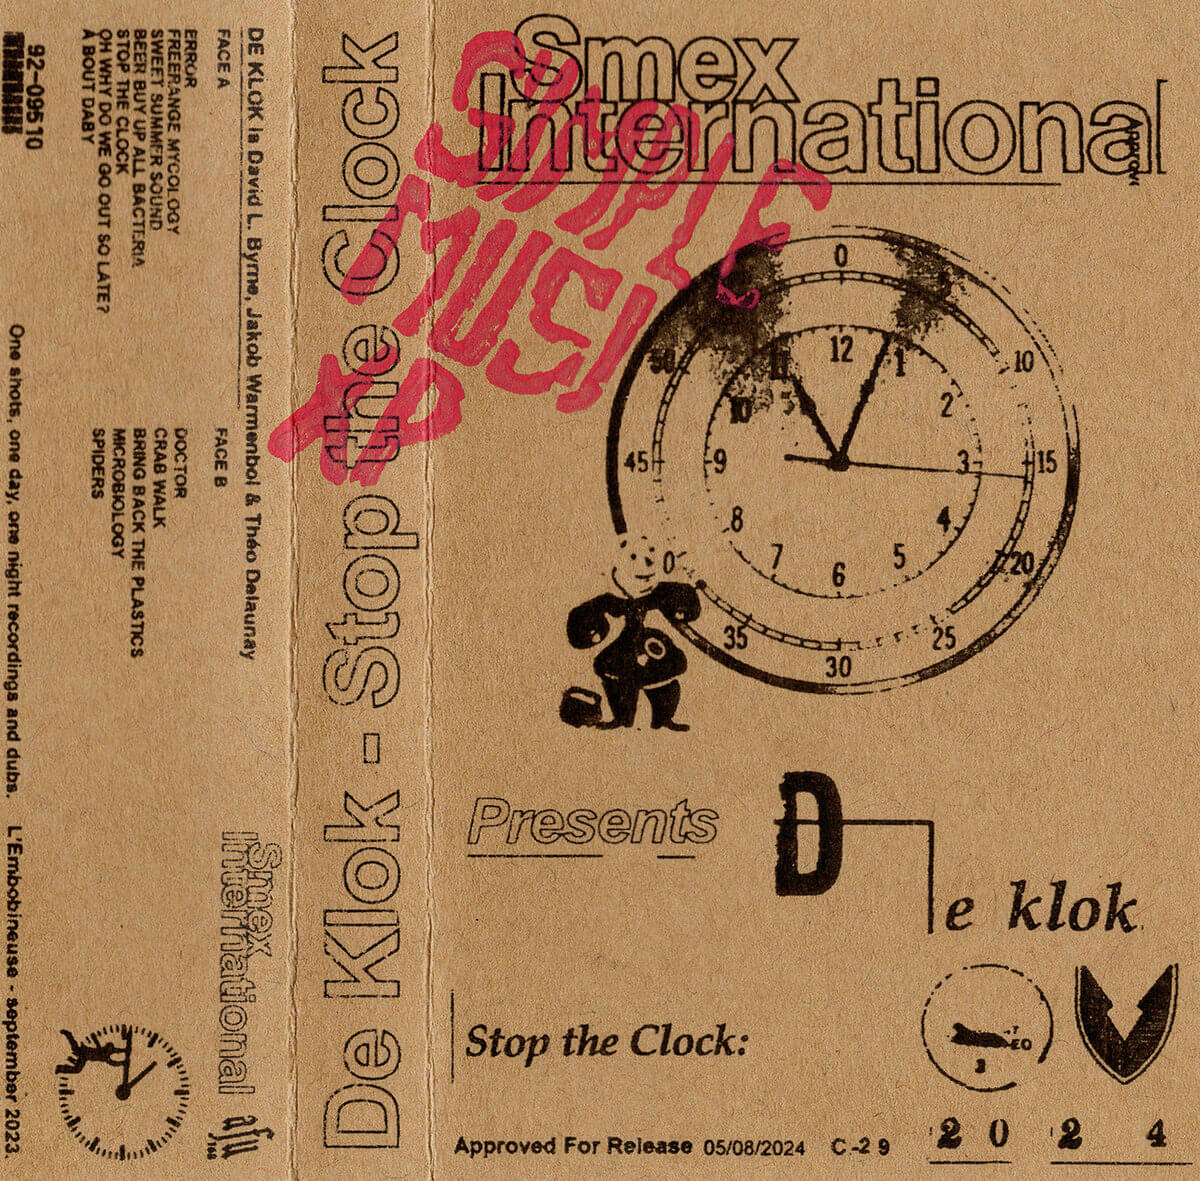 De Klok - Stop The Clock